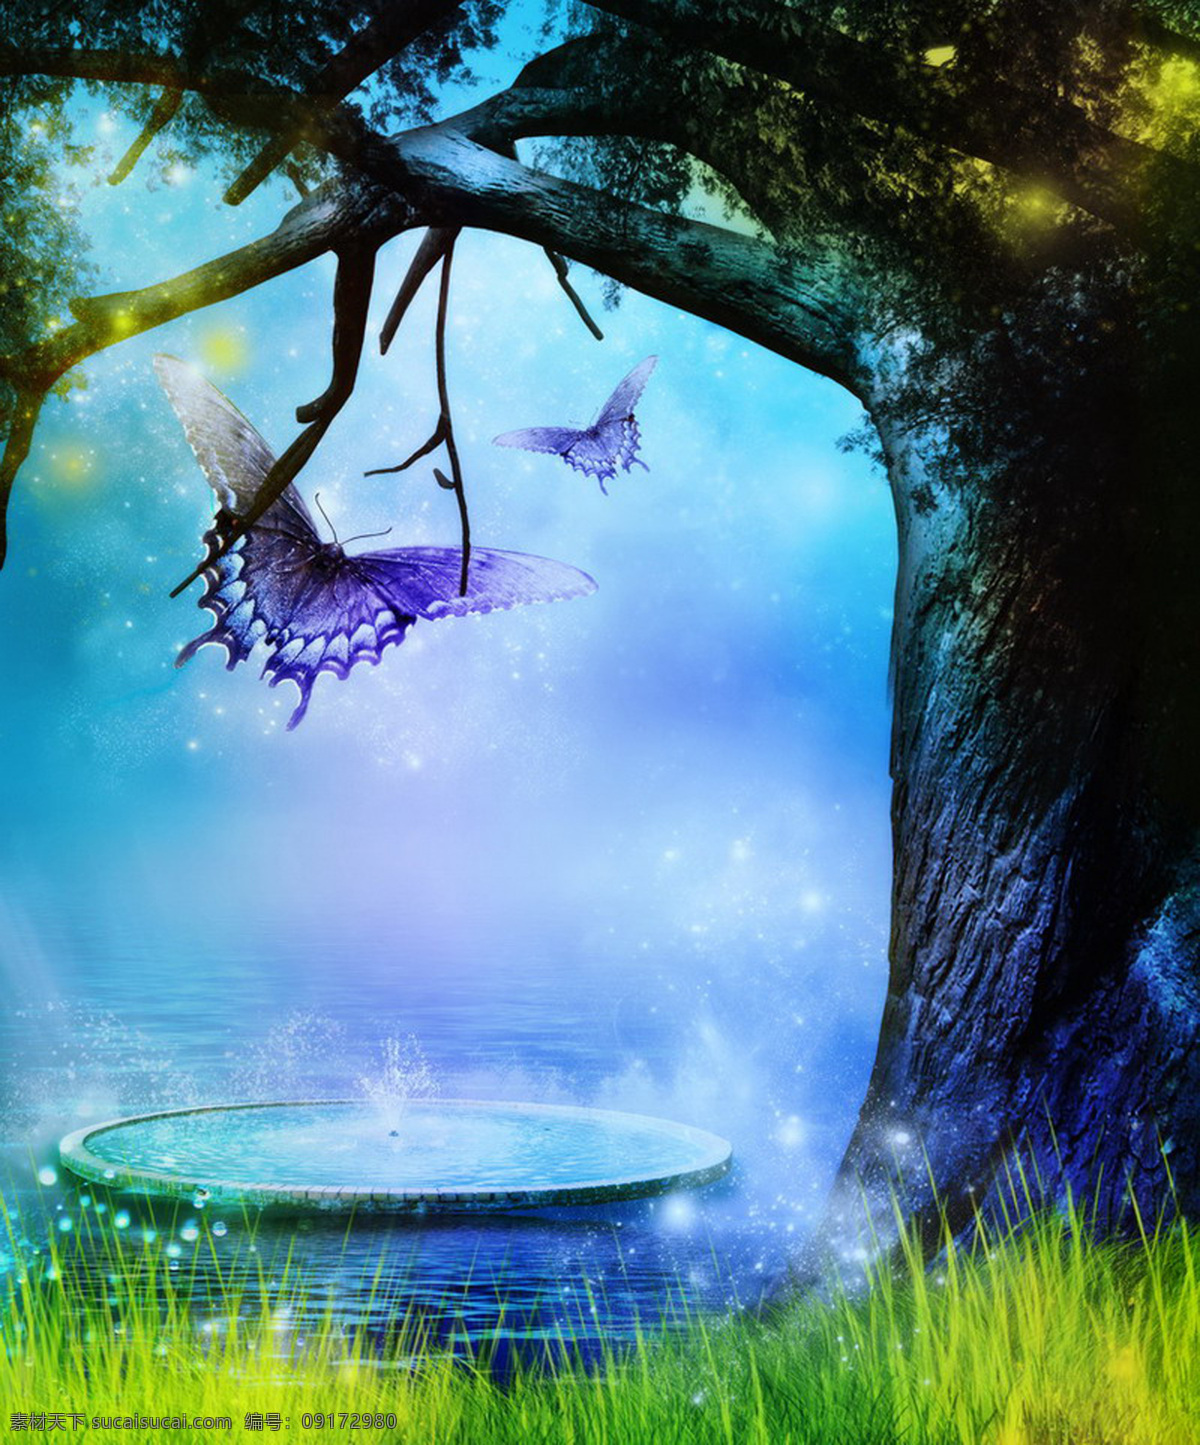 动漫动画 风景漫画 浪漫背景 森林 水池 童话背景 童话世界 童话 世界 模板下载 唯美 夜色背景 设计素材 设计风光 背景图片